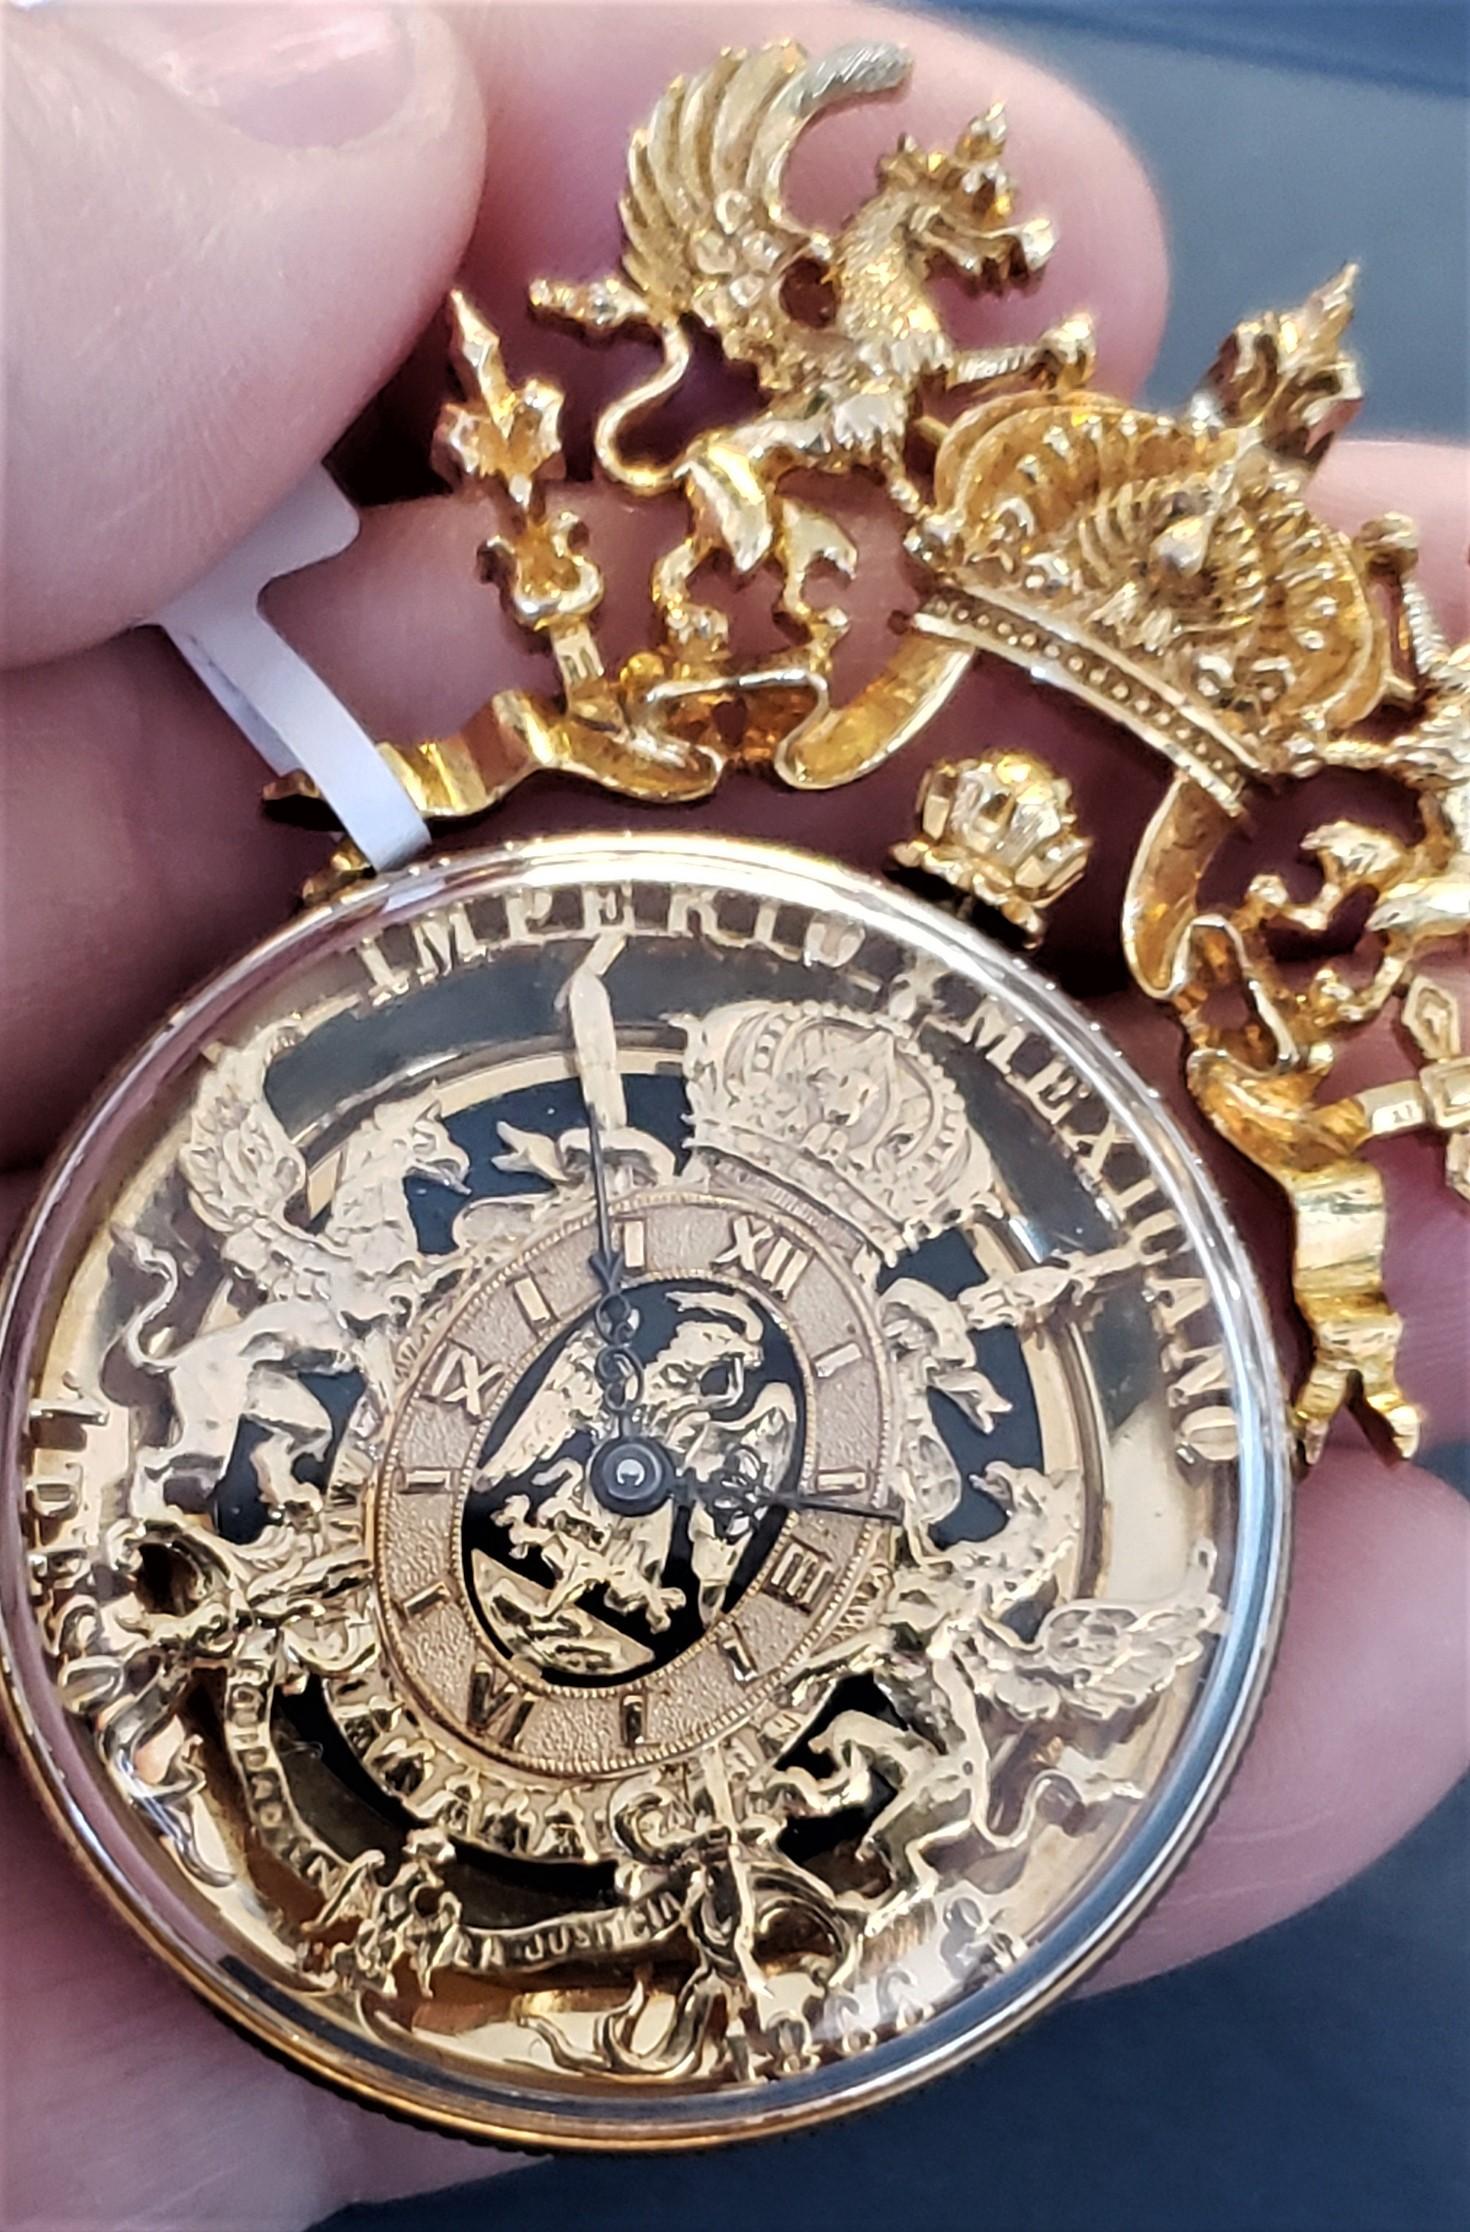 Paul Flato Imperio Mexicano 1866 Ein Peso Uhr/Anhänger 18K 44,4g


Die Uhr wurde am 24. Januar 2024 von einem zertifizierten Uhrmacher geliefert. Mechanisches Uhrwerk mit manuellem Aufzug - alles in Ordnung. Alle goldenen Details sind in sehr gutem